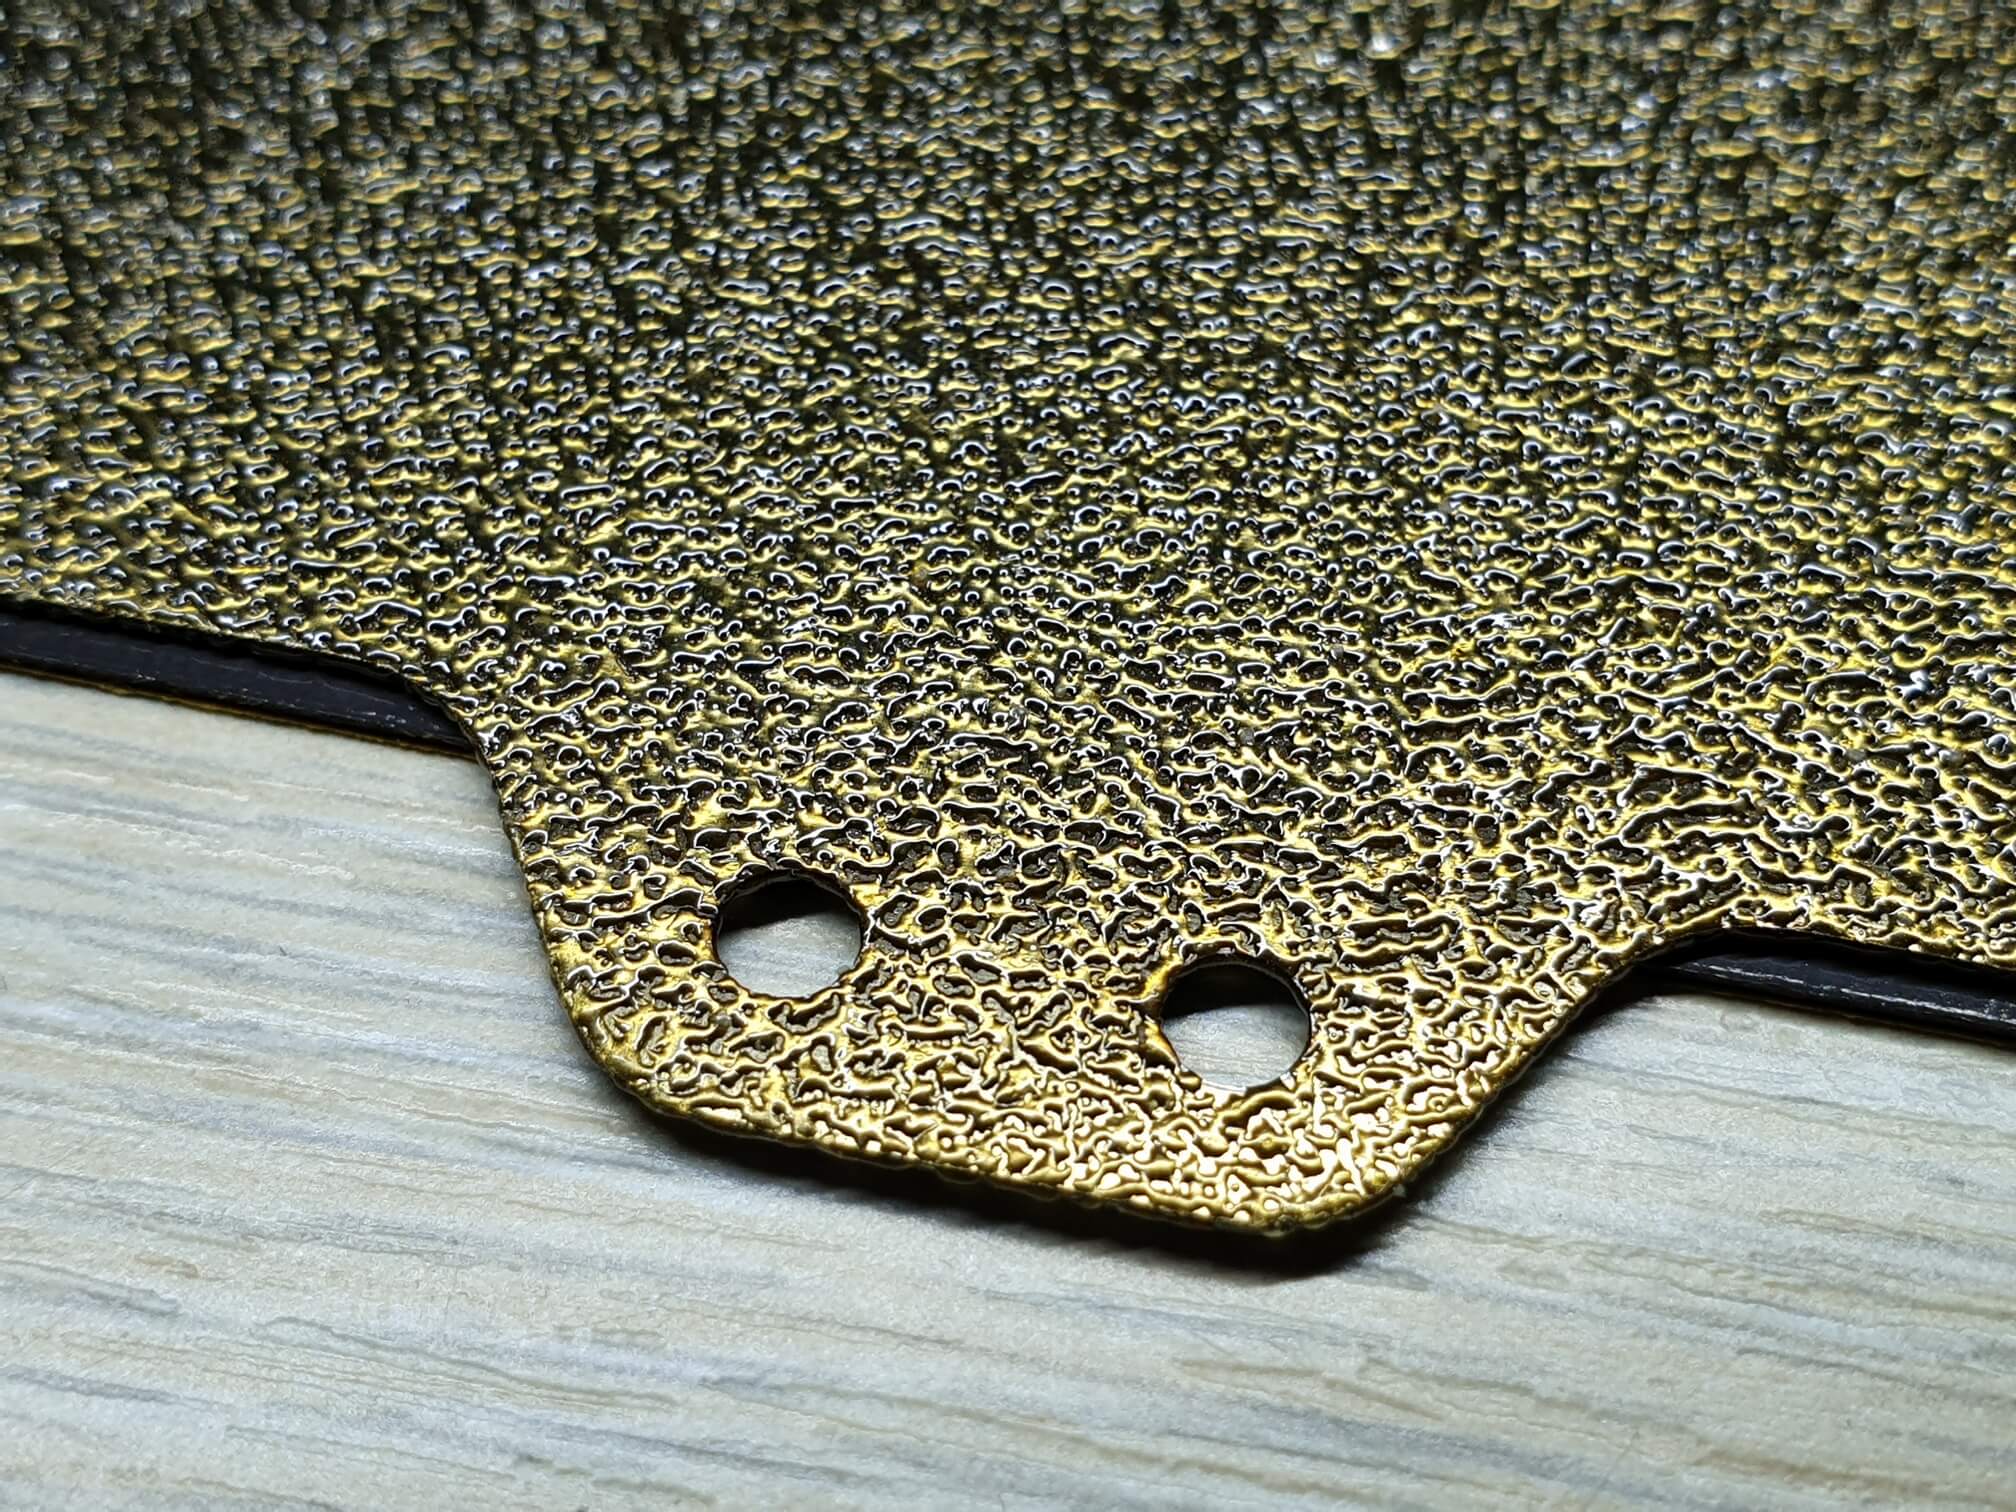 https://3dprintbeginner.com/wp-content/uploads/2020/07/Textured-PEI-Powder-Steel-Plate-from-Banggood-1.jpg